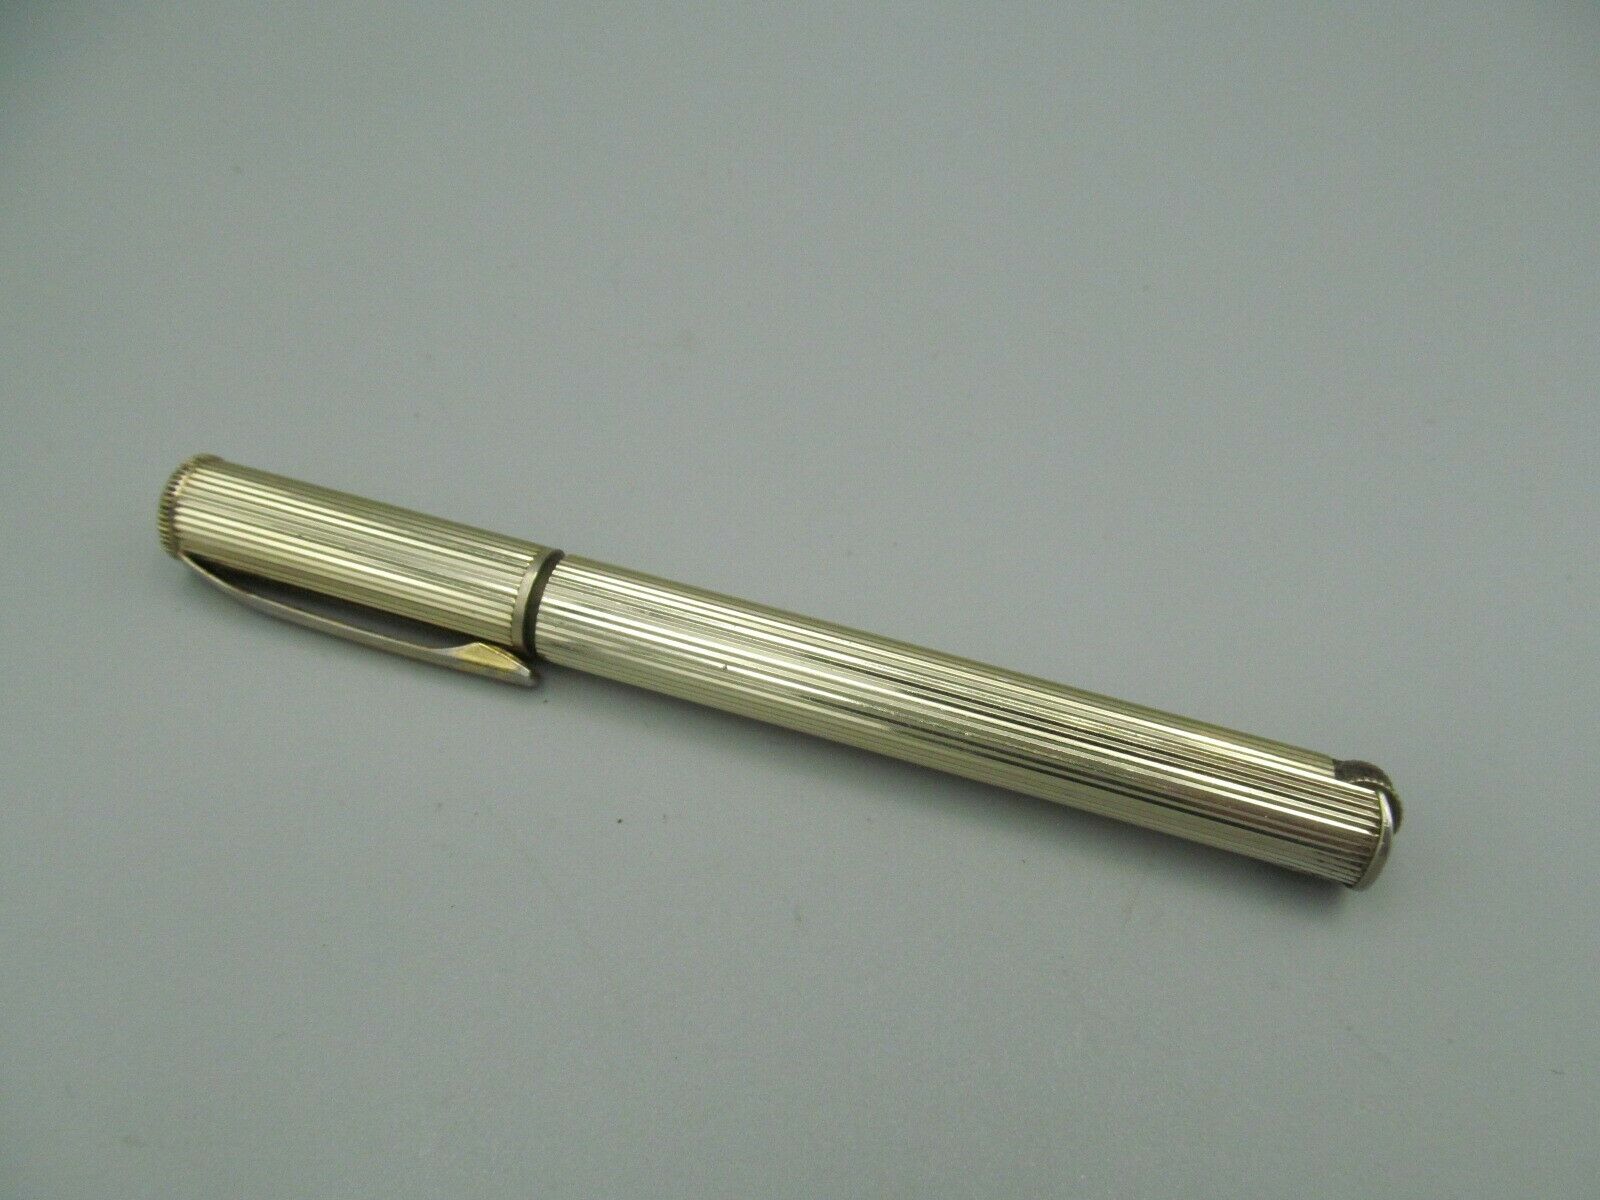 Figural Lighter – Pen Shaped